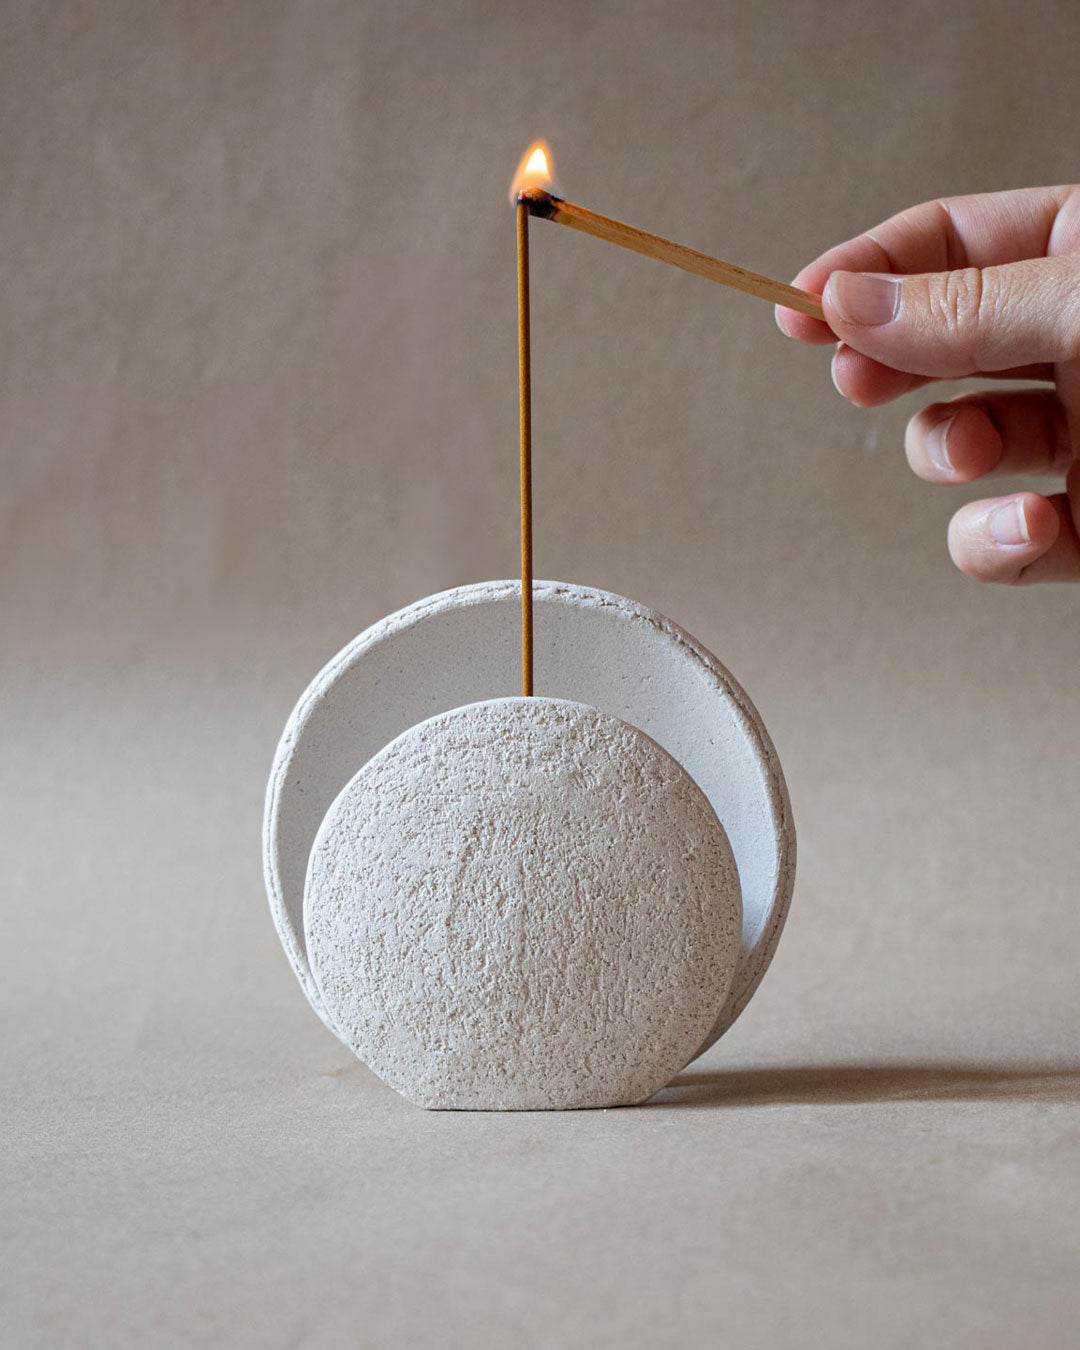 Nomad Luna - Full moon incense burner ceramics Claire Lune